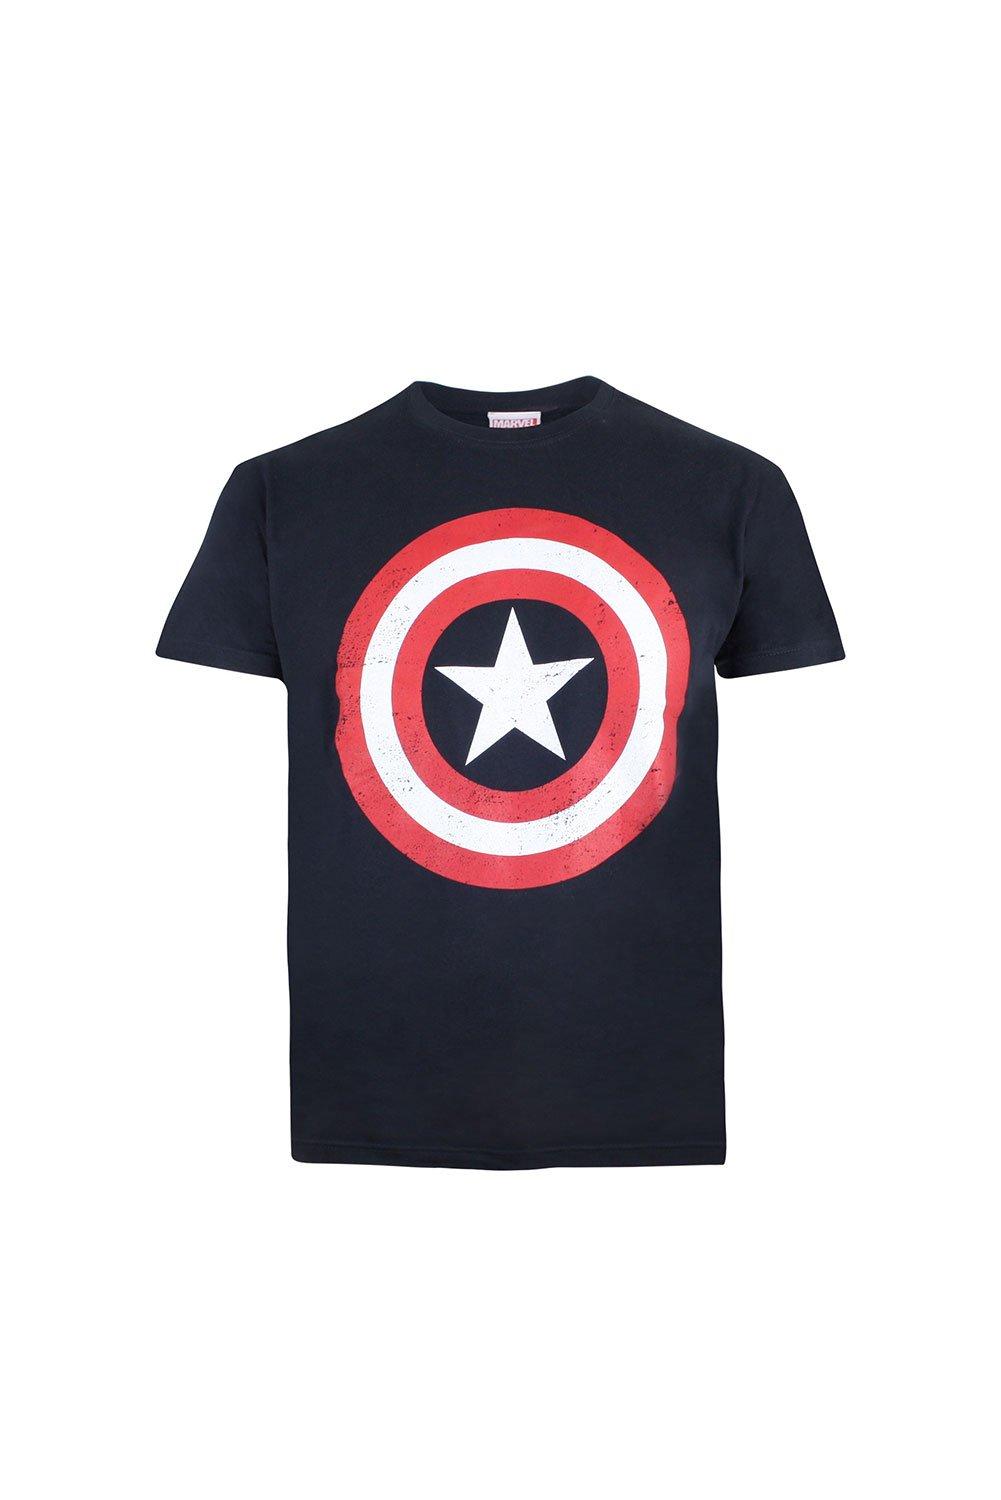 Хлопковая футболка со щитом Капитана Америки Marvel, синий